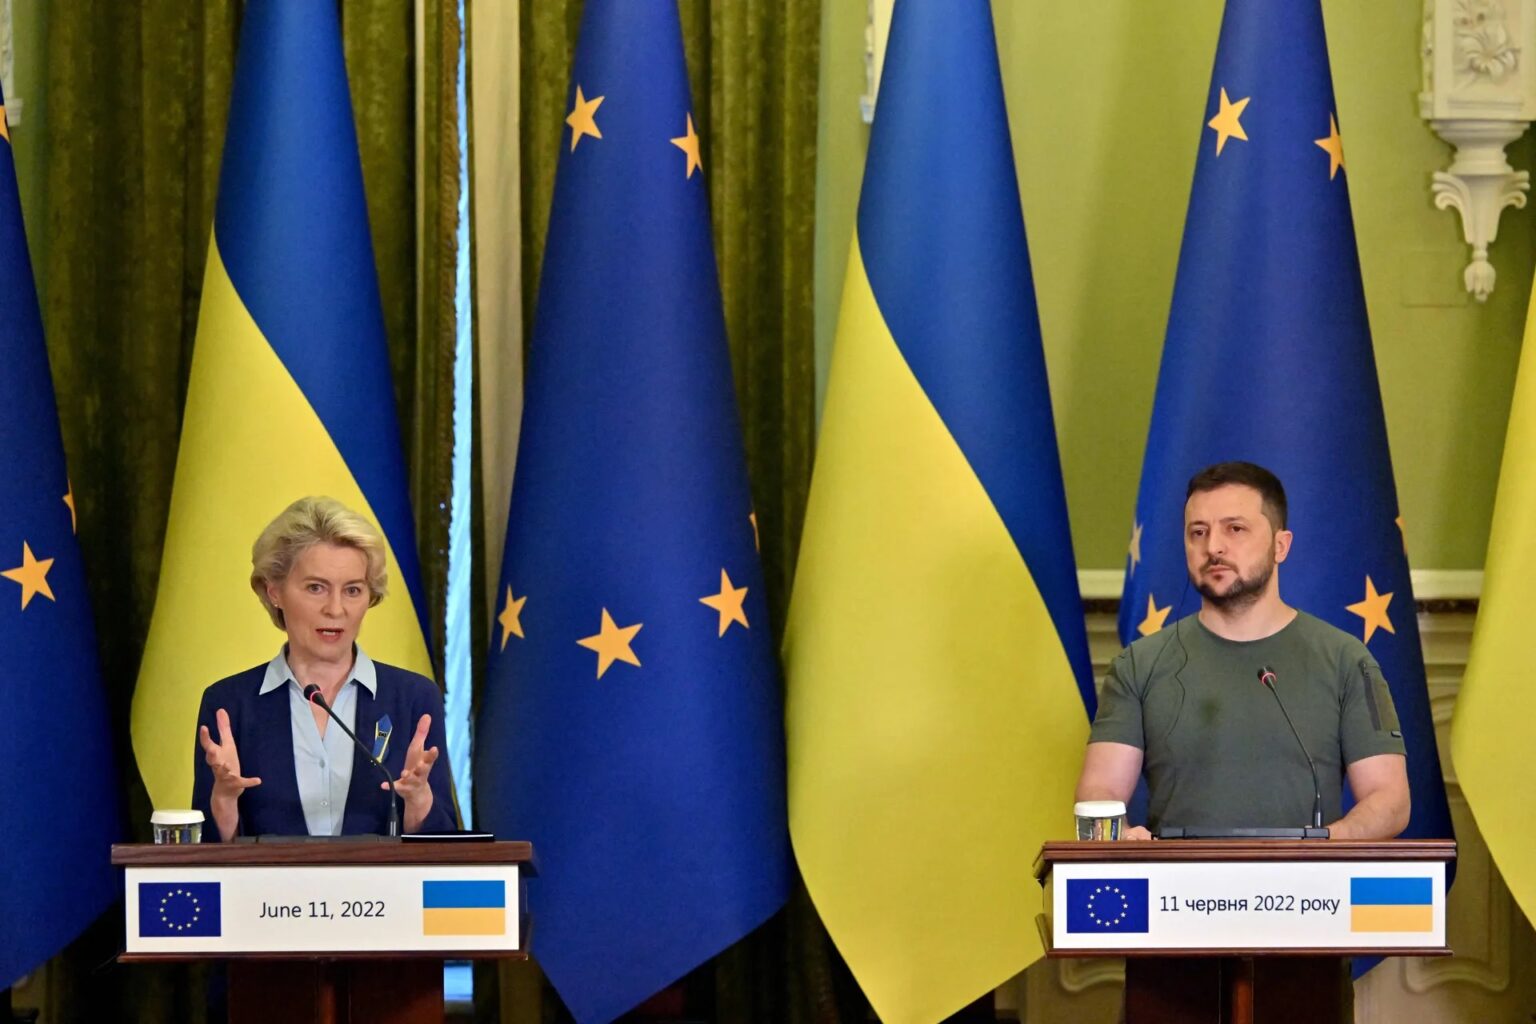 The EU grants Ukraine candidate status with Ukrainian President Volodymyr Zelensky and European Commission President Ursula von der Leyen in Kyiv